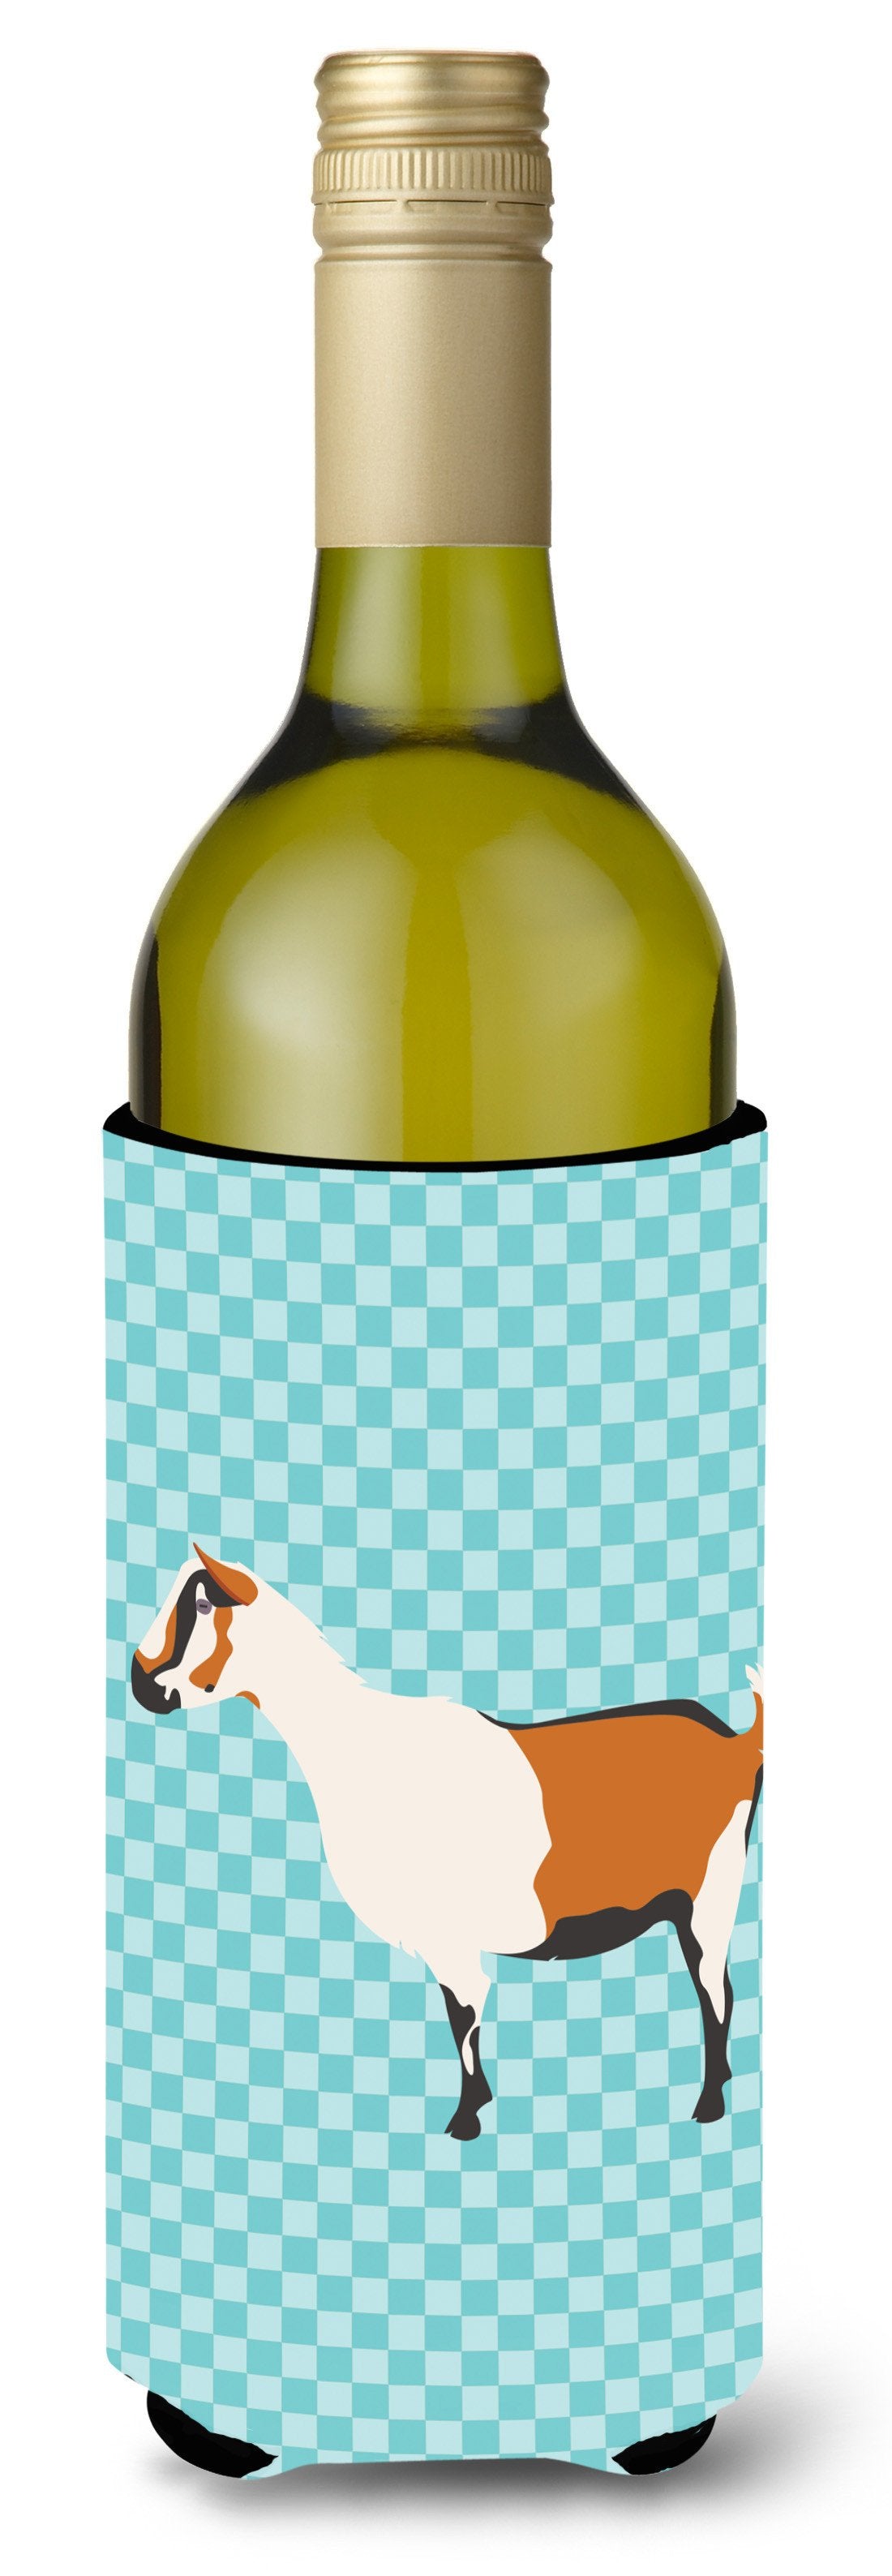 Alpine Goat Blue Check Wine Bottle Beverge Insulator Hugger BB8054LITERK by Caroline's Treasures